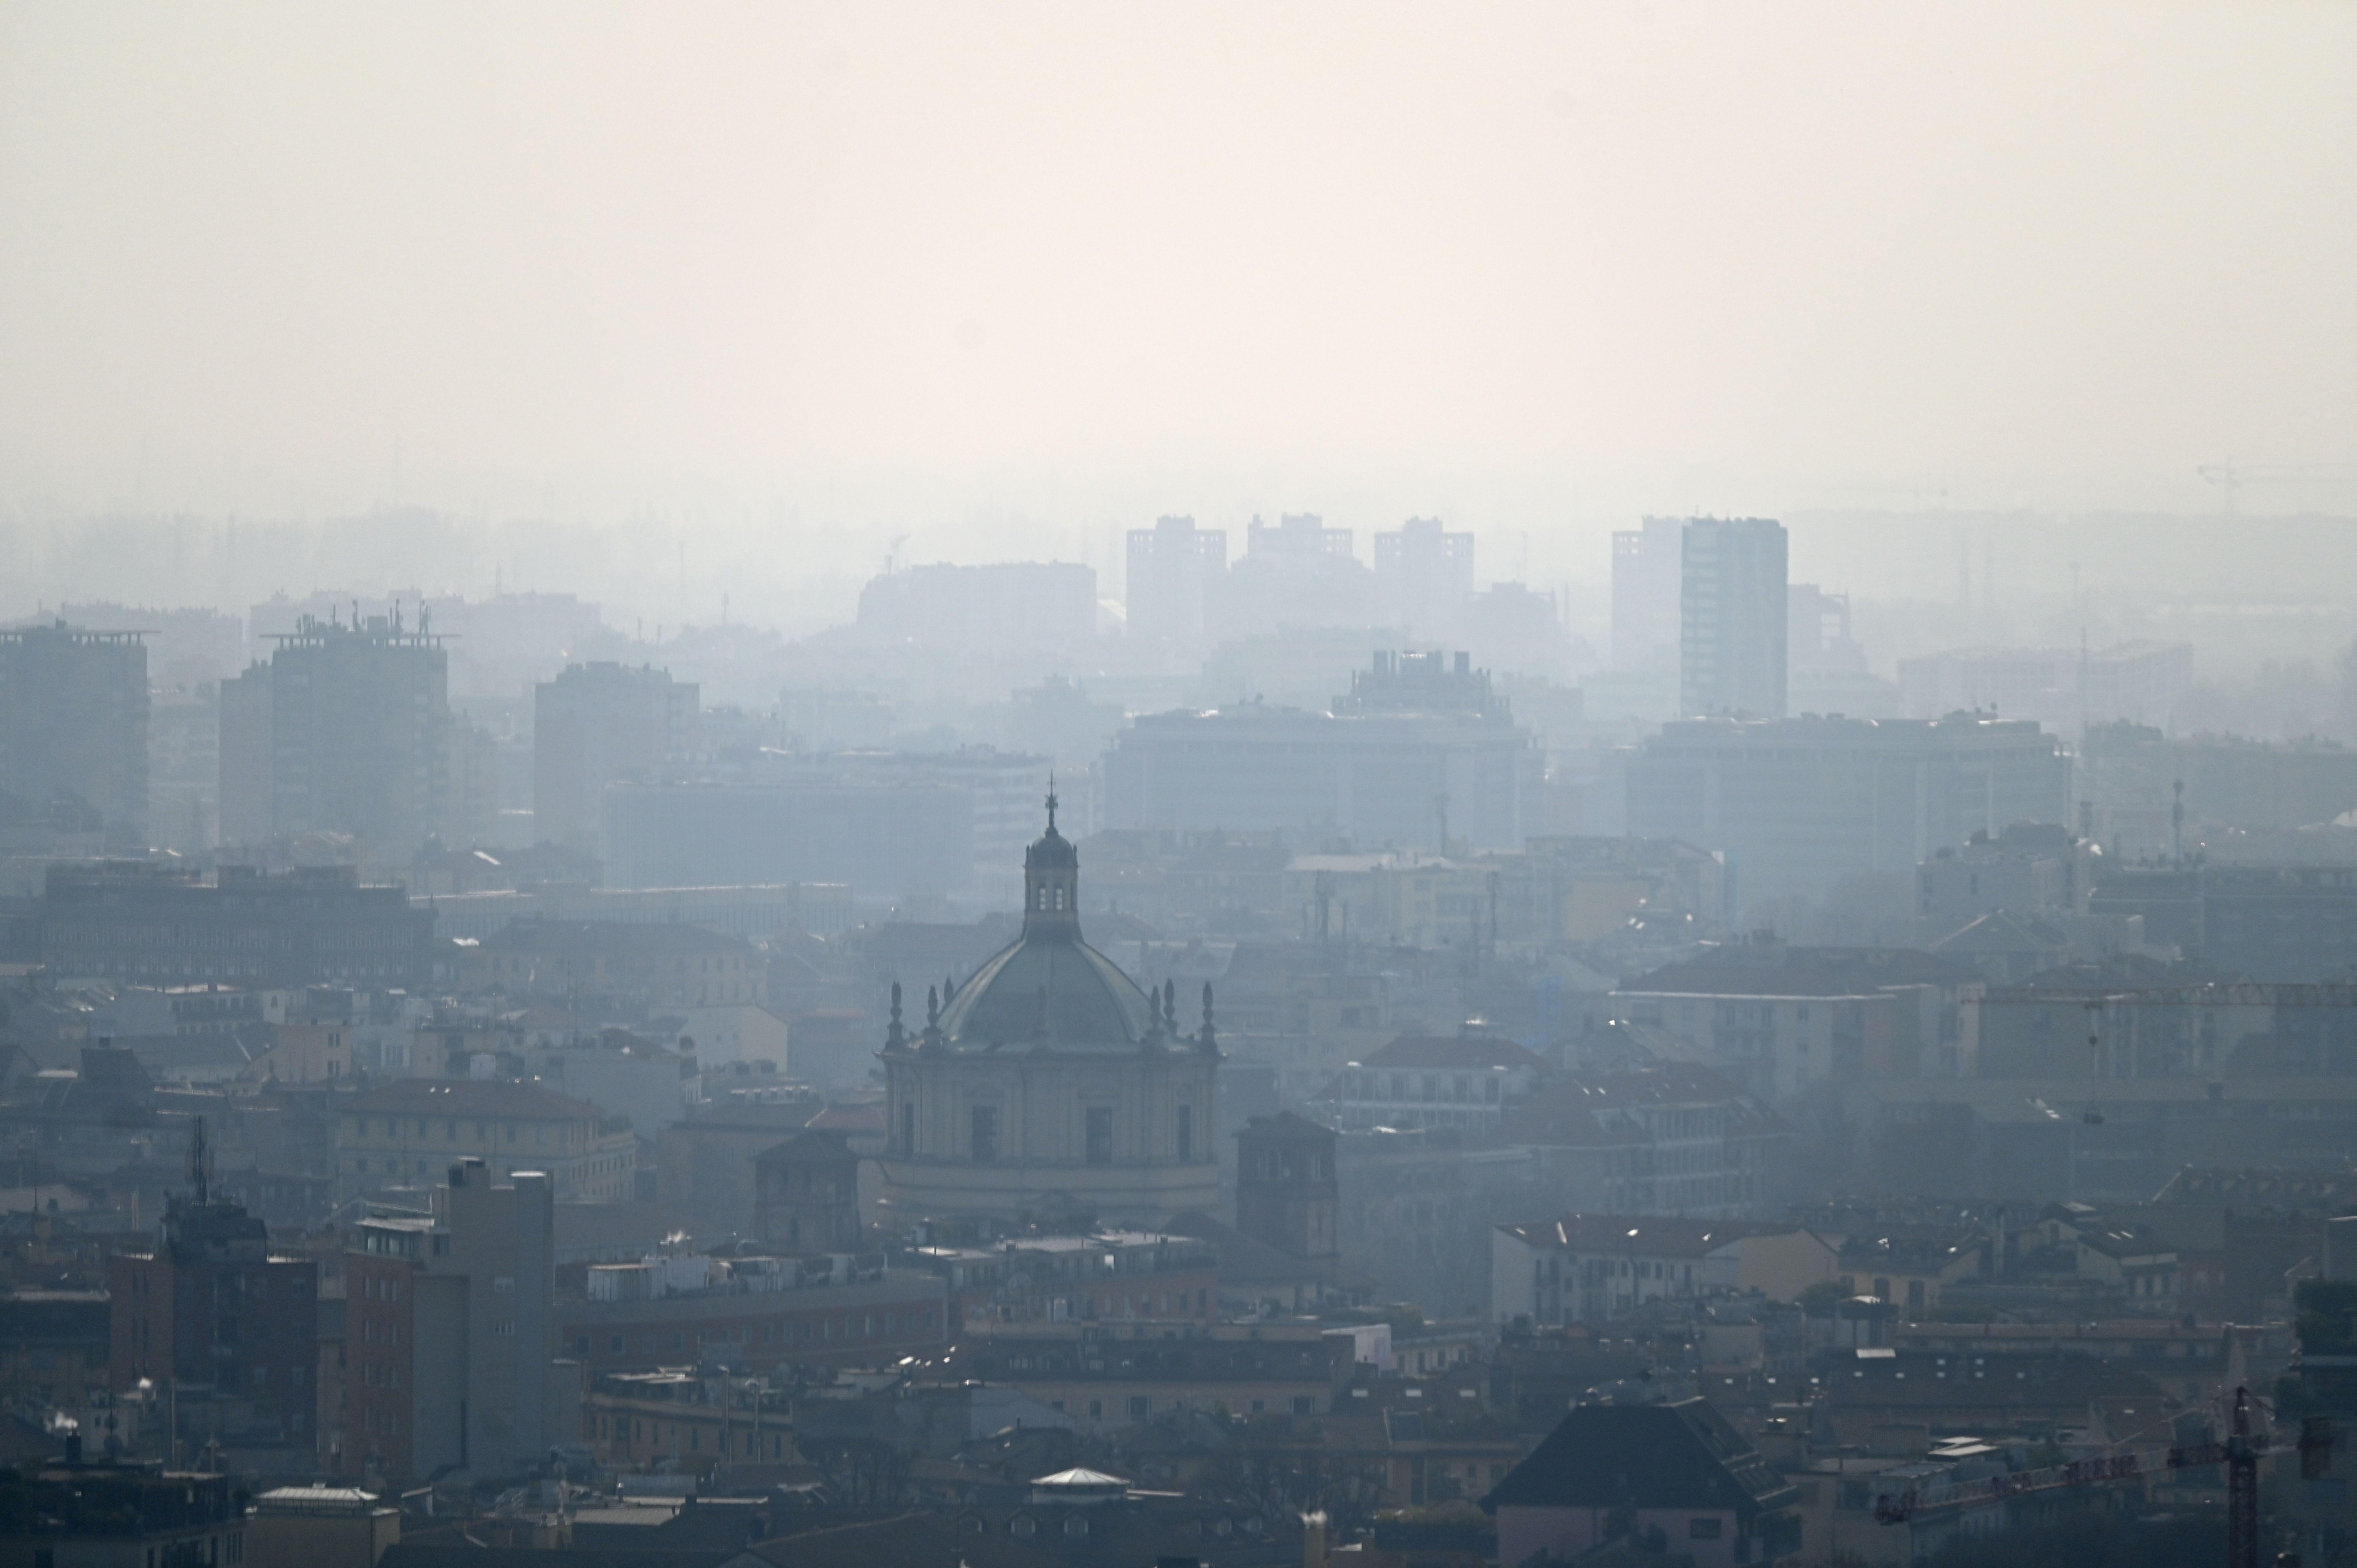 Inquinamento aria - nel mondo 8 -1 milioni di morti nel 2021: il report